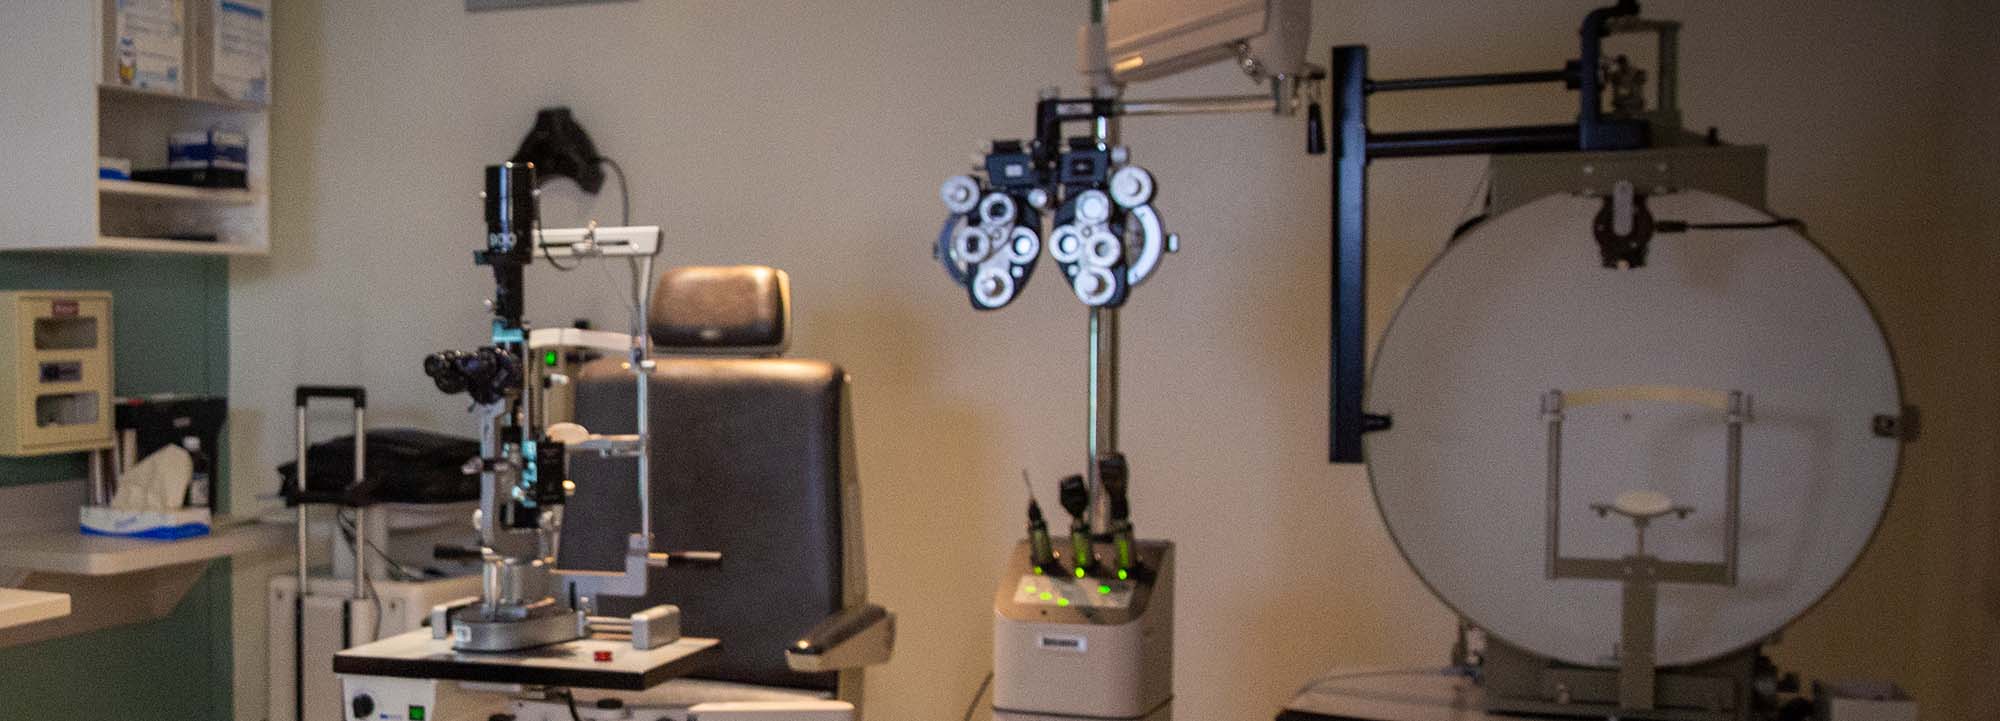 Equipo de oftalmología en una clínica oftalmológica